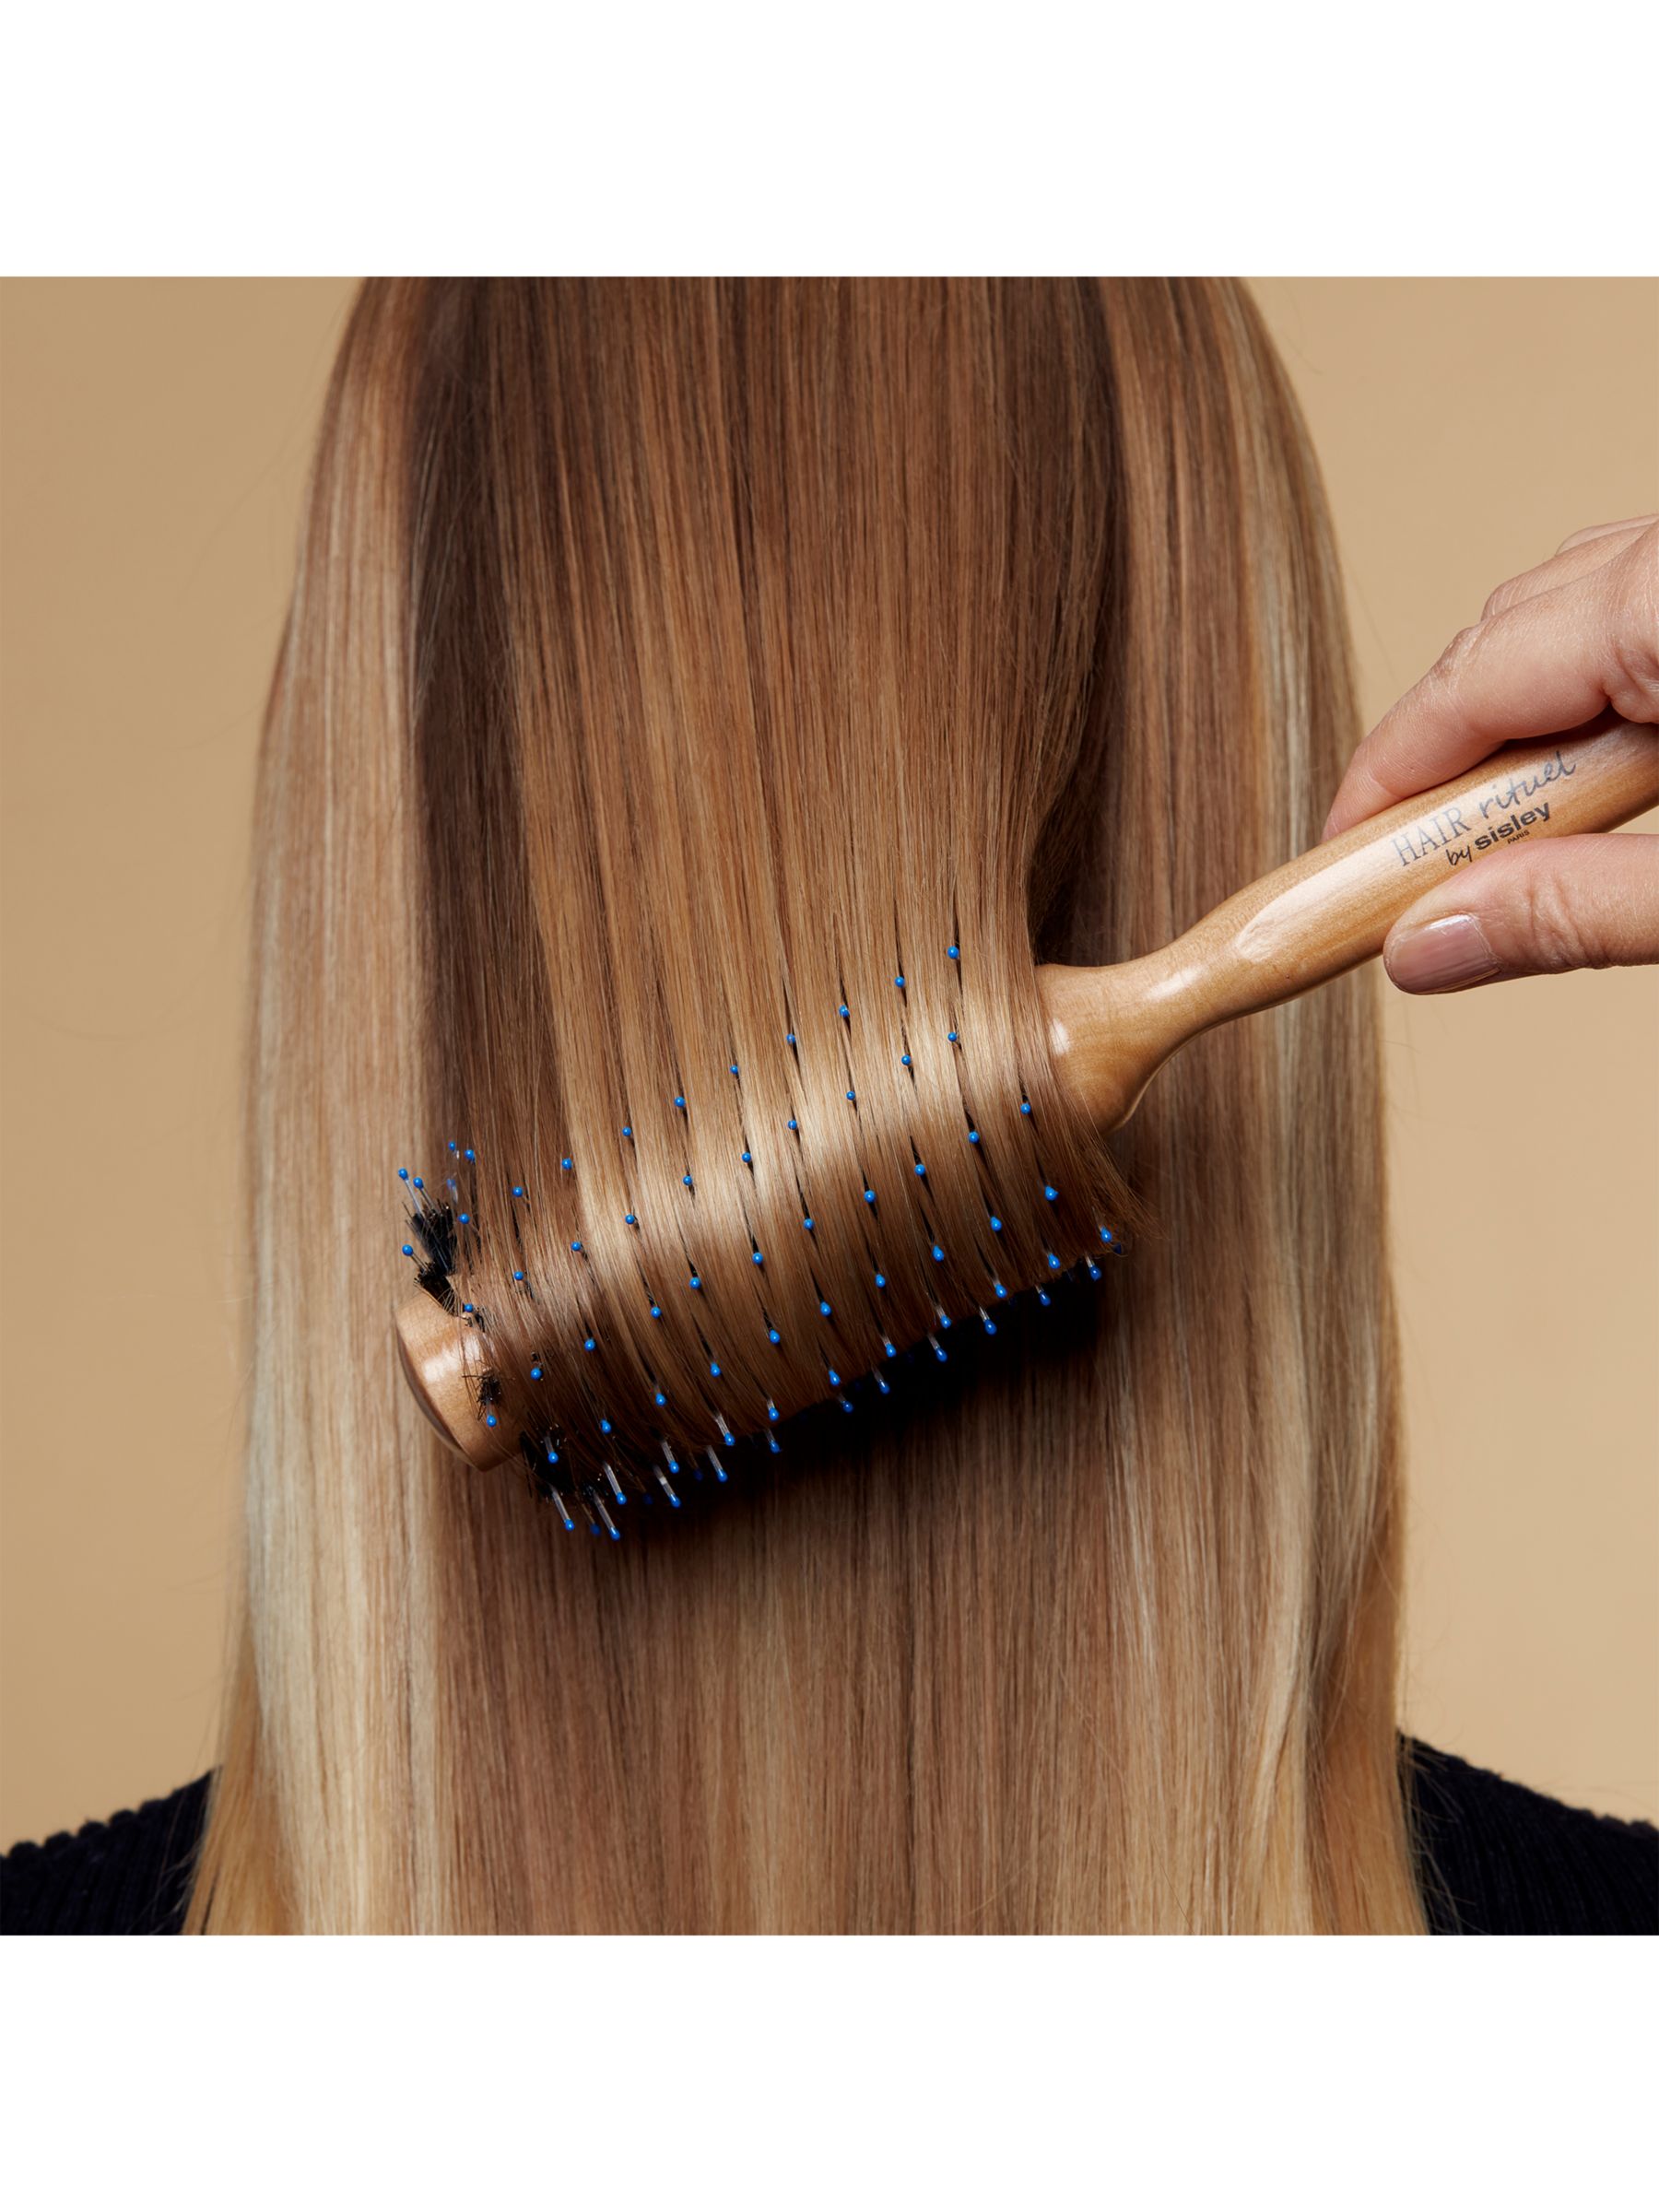 Sisley-Paris Hair Rituel Brush for Thin/Damaged Hair